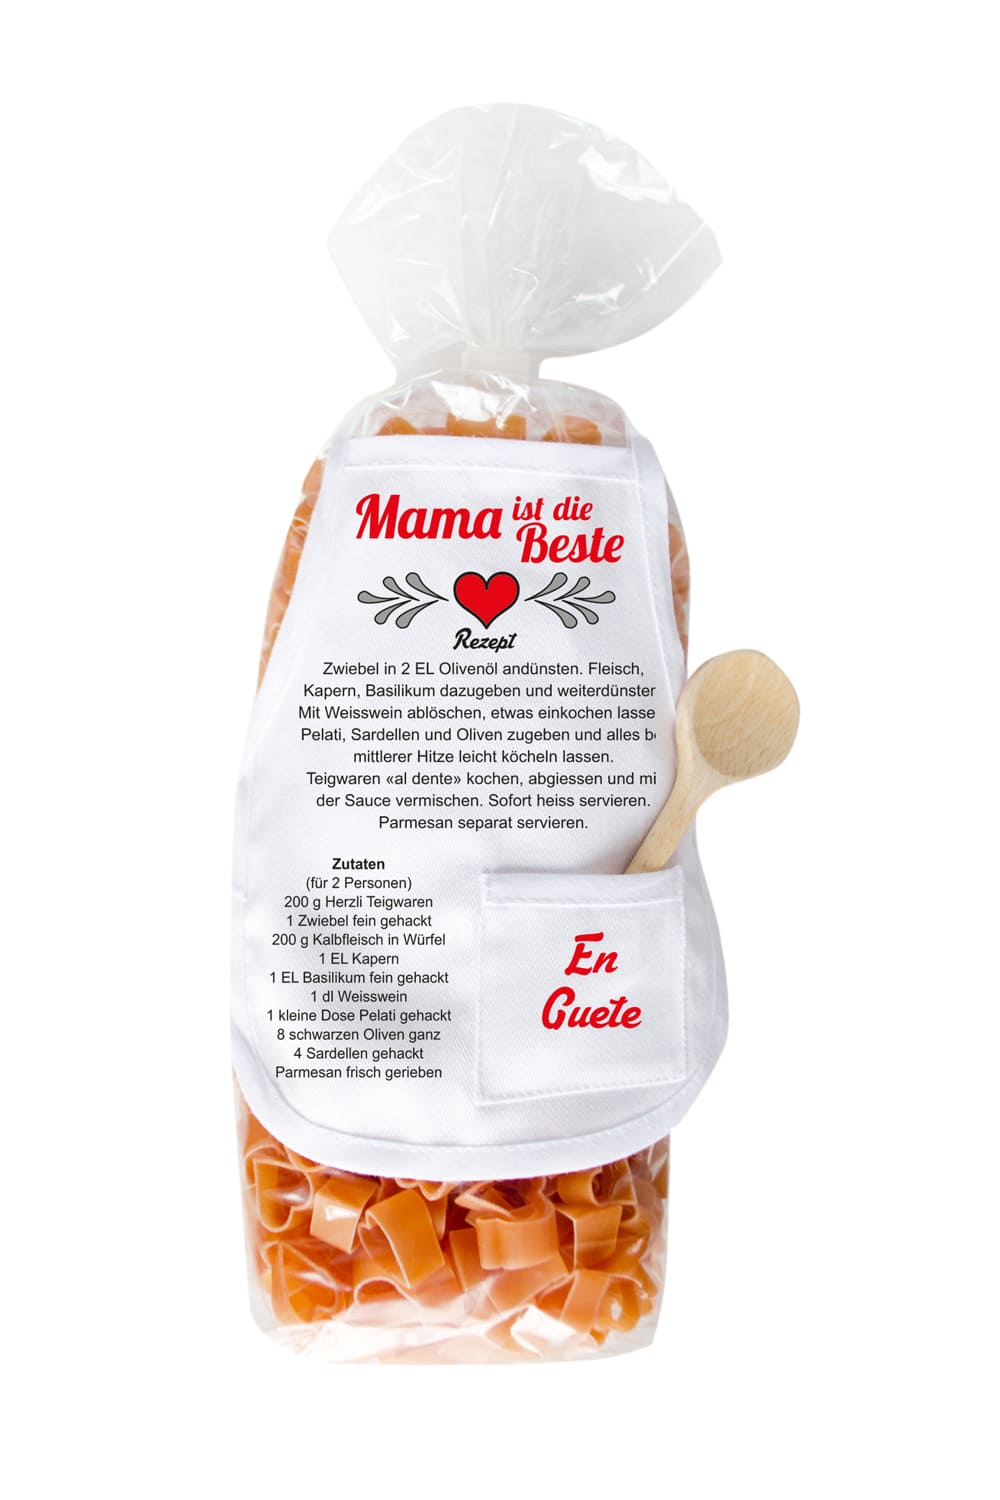 Die Mama Pasta sind in einer Herz Form und in einer schoenen Verpackung mit einer Mini Kochschuerze. Ausserdem steht auf der laessigen Kochschuerze ein feines Rezept zum Nachkochen und der Spruch: Mama ist die Beste. Ein tolles Geschenk für die liebe Mutter zum Geburtstag, zu Weihnachten oder zum Valentinstag.